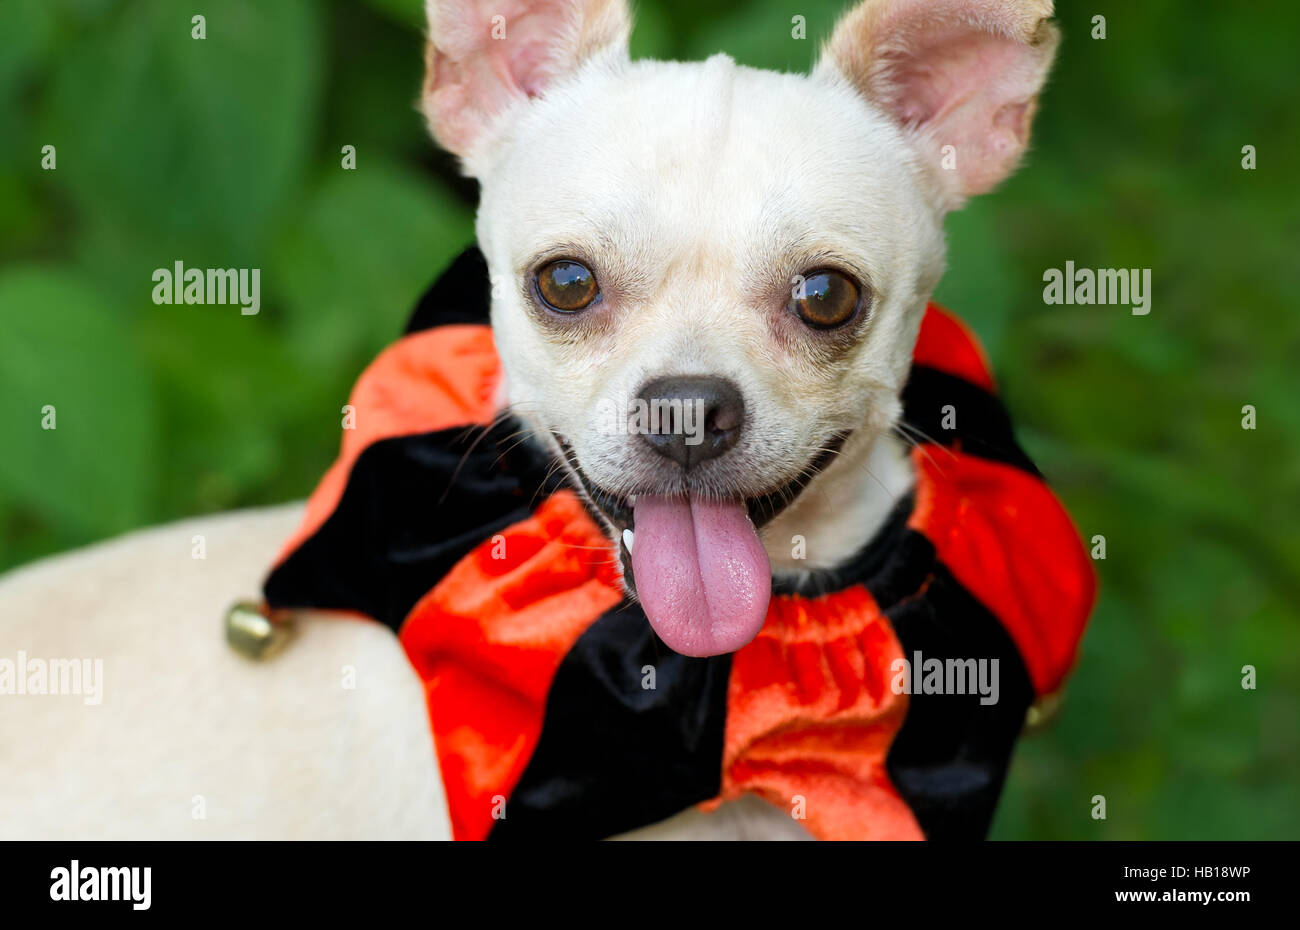 Cane divertente è un simpatico cane eccitato con la sua lingua appendere fuori della sua bocca e con un grande sorriso sul suo volto. Foto Stock